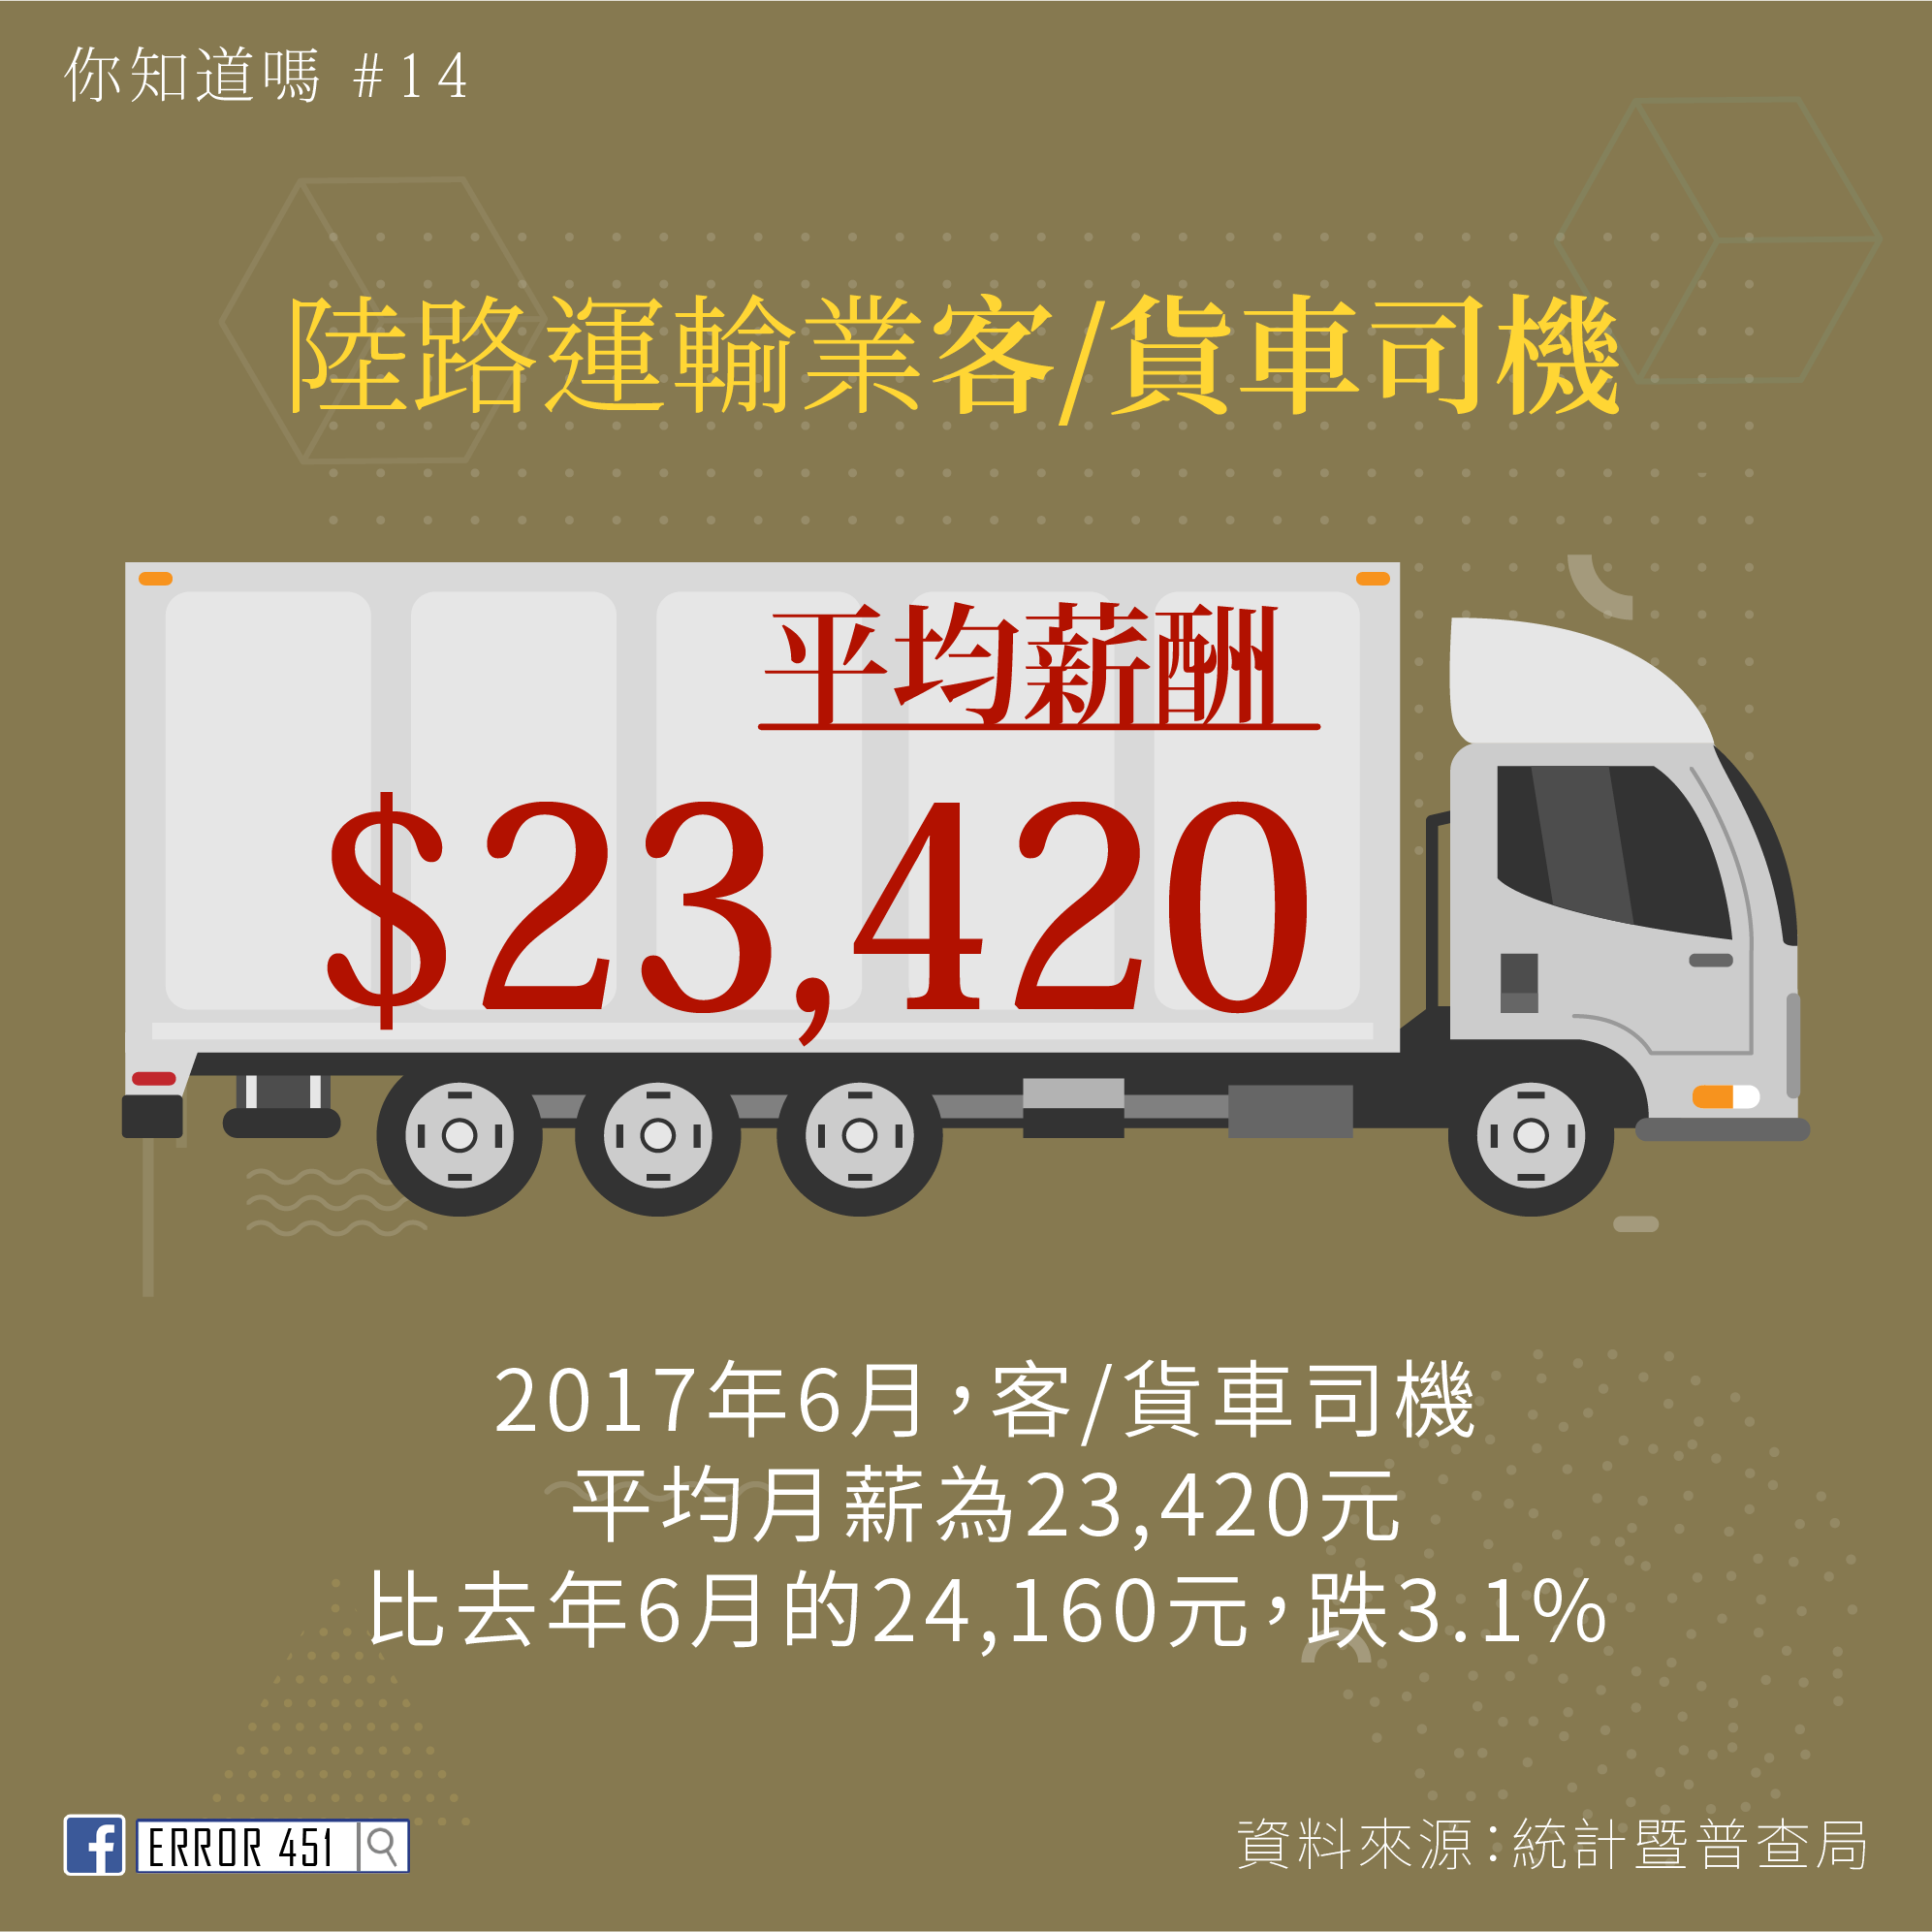 陸路運輸業客/貨車司機平均薪酬 $23,400